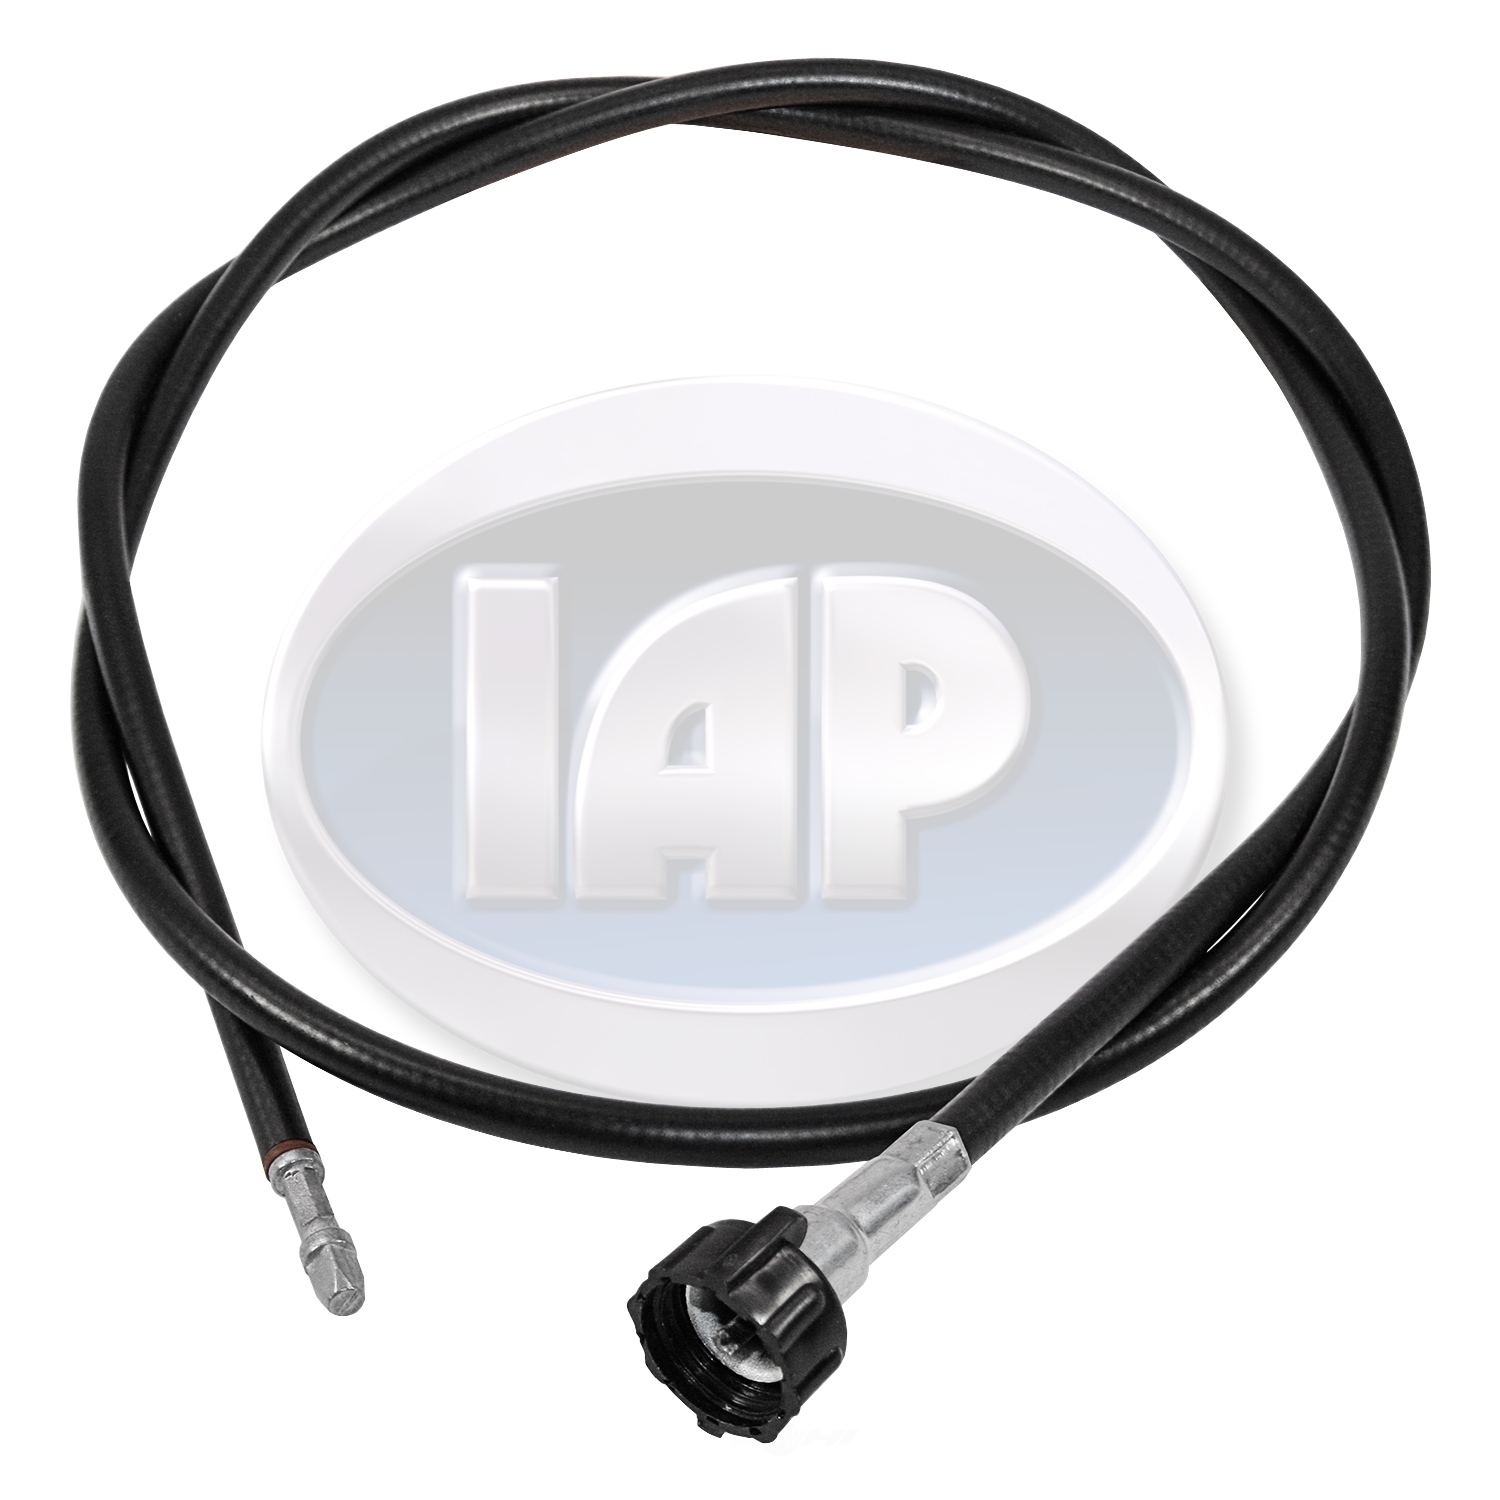 IAP/KUHLTEK MOTORWERKS - Speedometer Cable - KMS 111957801J